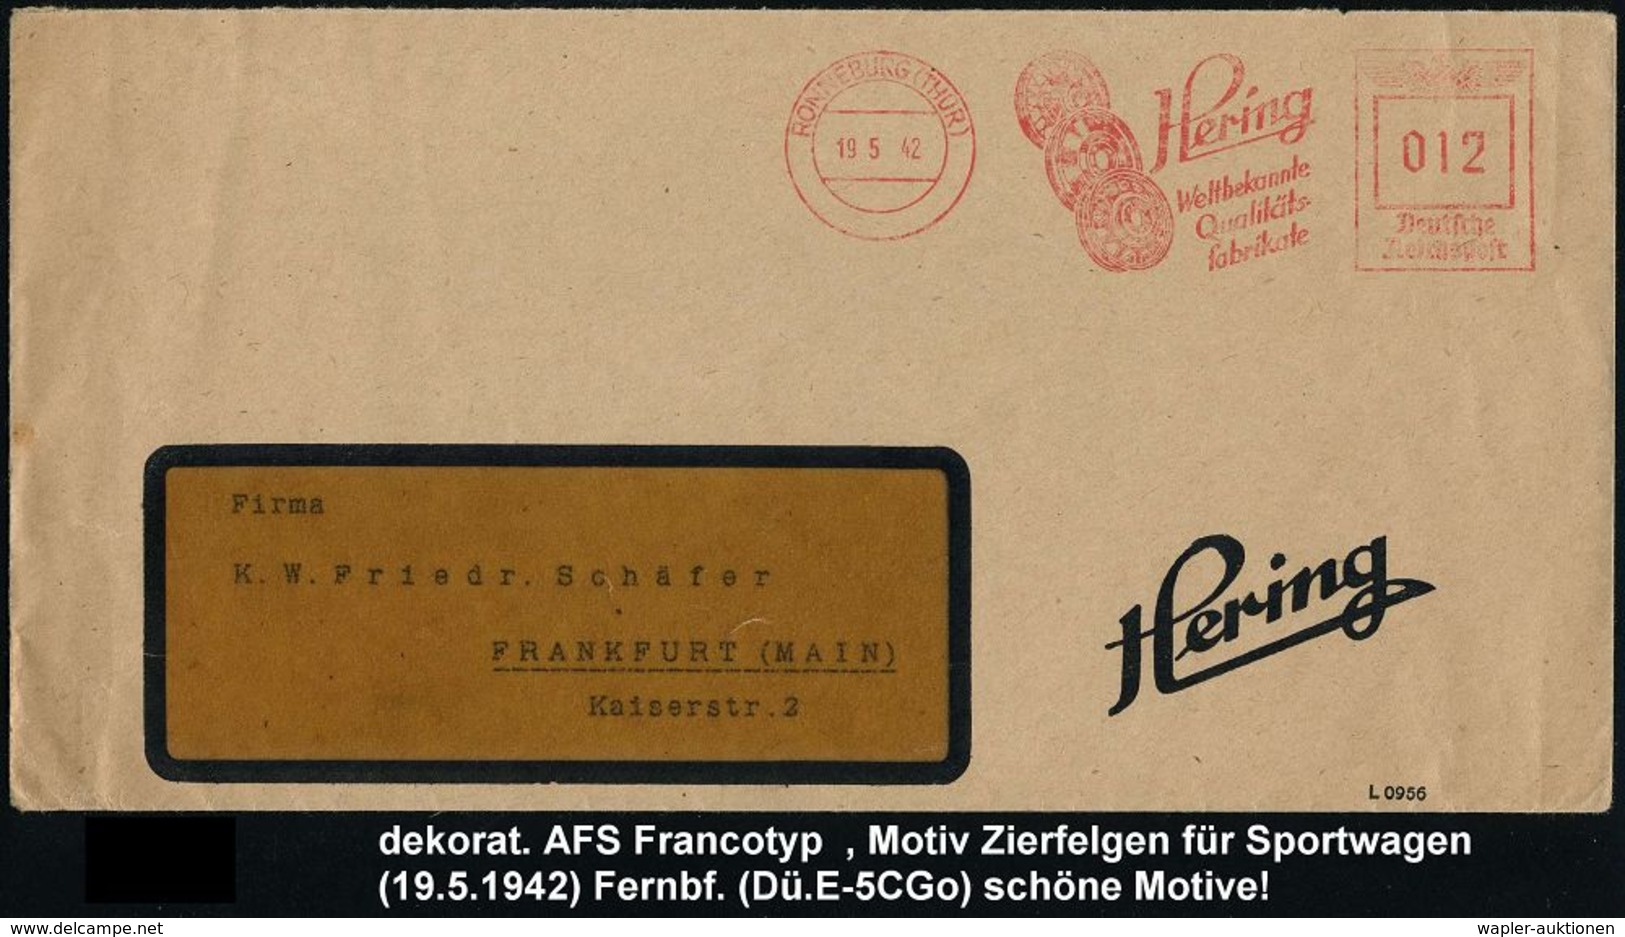 REIFEN & RÄDER : RONNEBRG (THÜR)/ Hering/ Weltbekannte/ Qualitäts-/ Fabrikate 1942 (19.5.) AFS = 2 PKW- U. Motorrad-Felg - Voitures